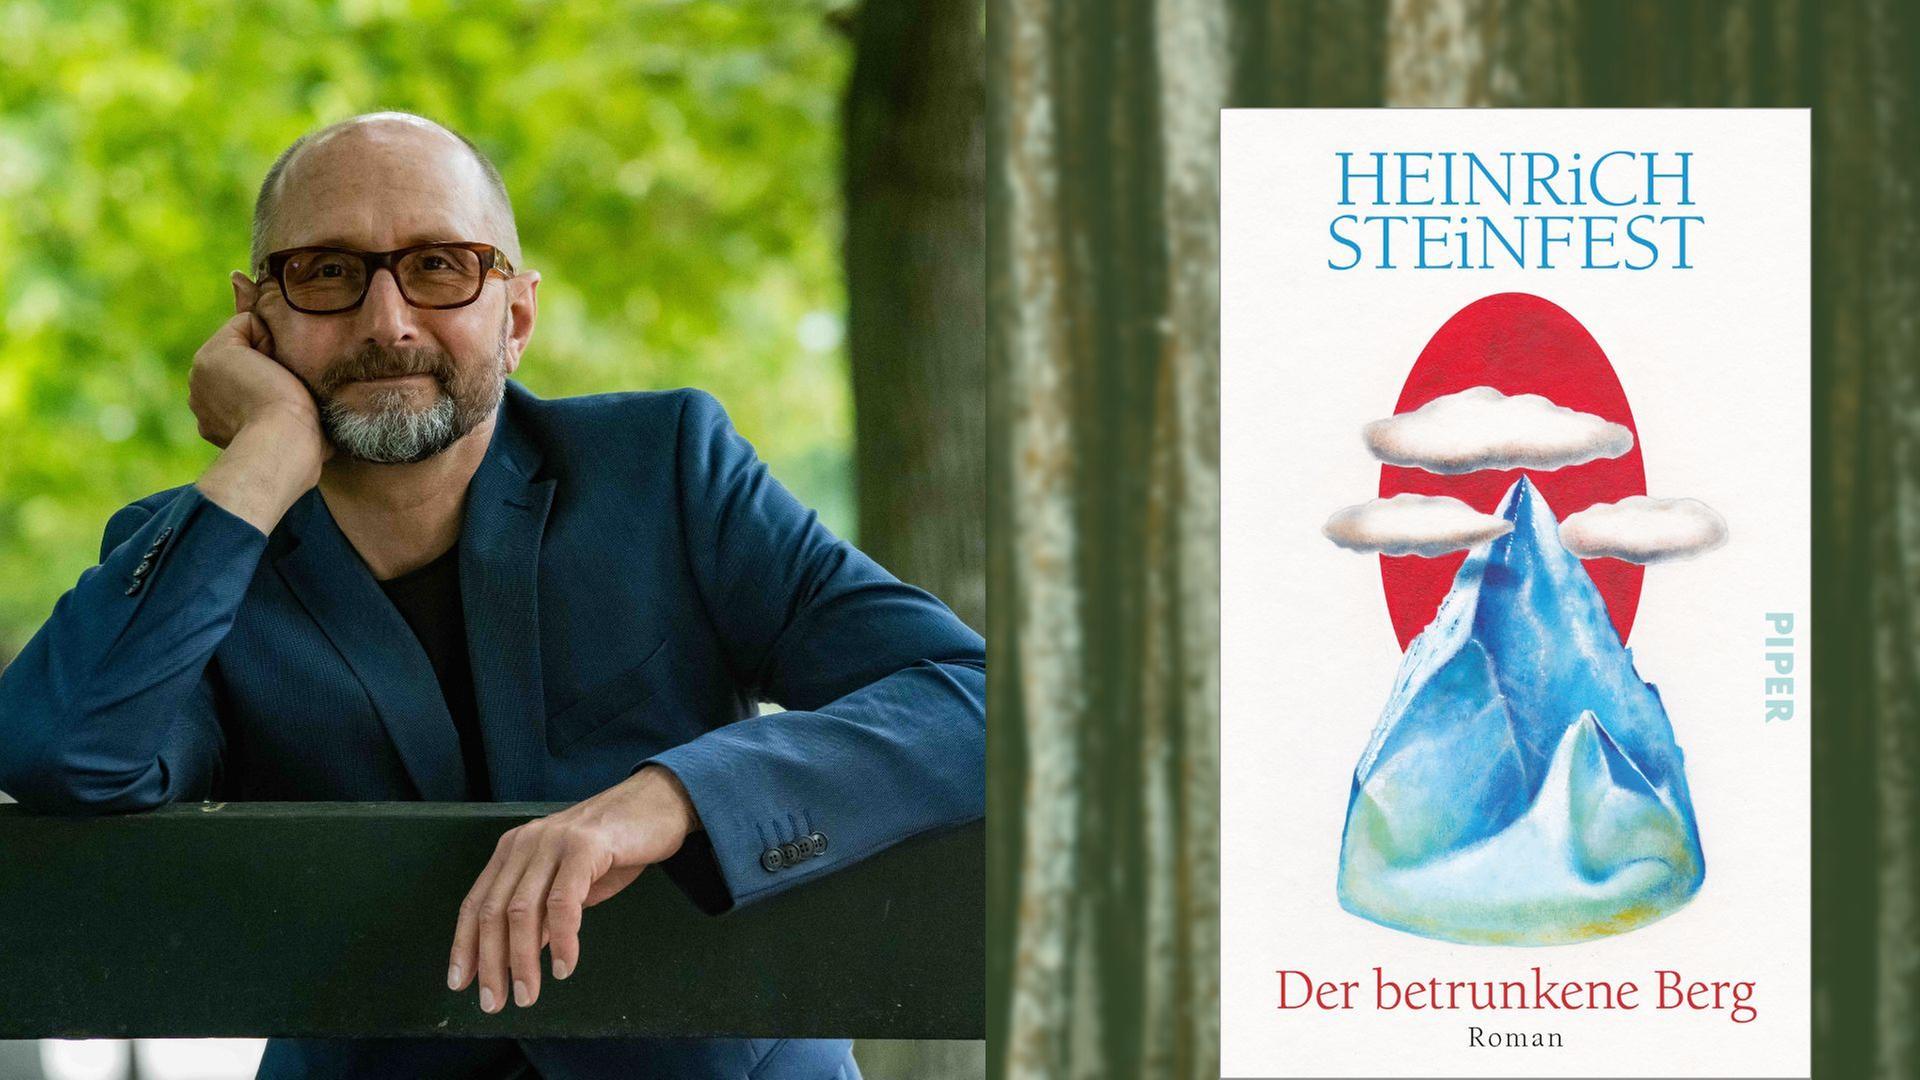 Heinrich Steinfest: "Der betrunkene Berg"